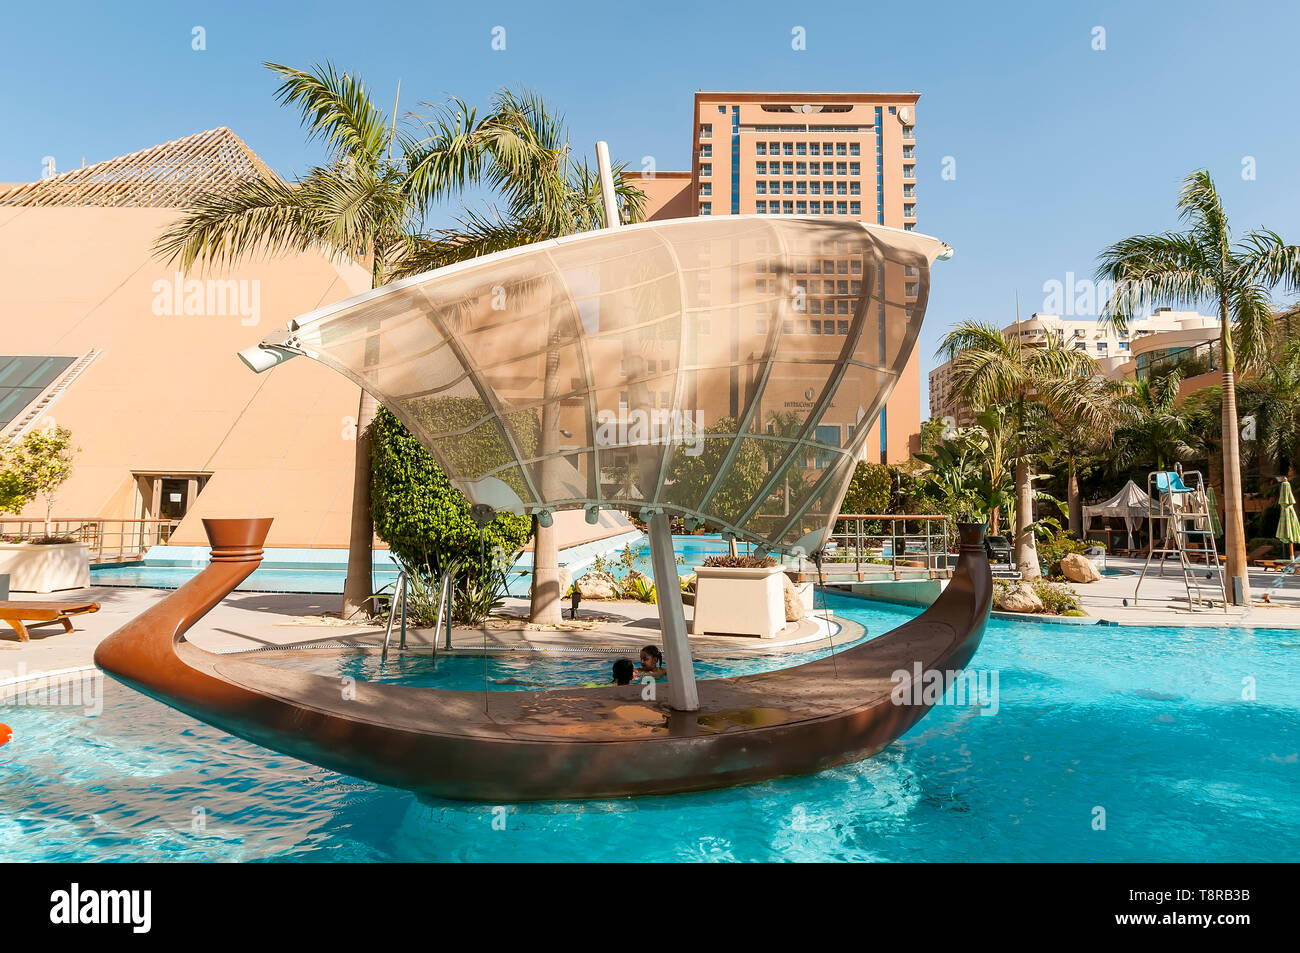 Hôtel Intercontinental Citystars Piscine avec decorationand miniature bateau solaire pharaonique ombre canopy Heliopolis Cairo Egypte Banque D'Images